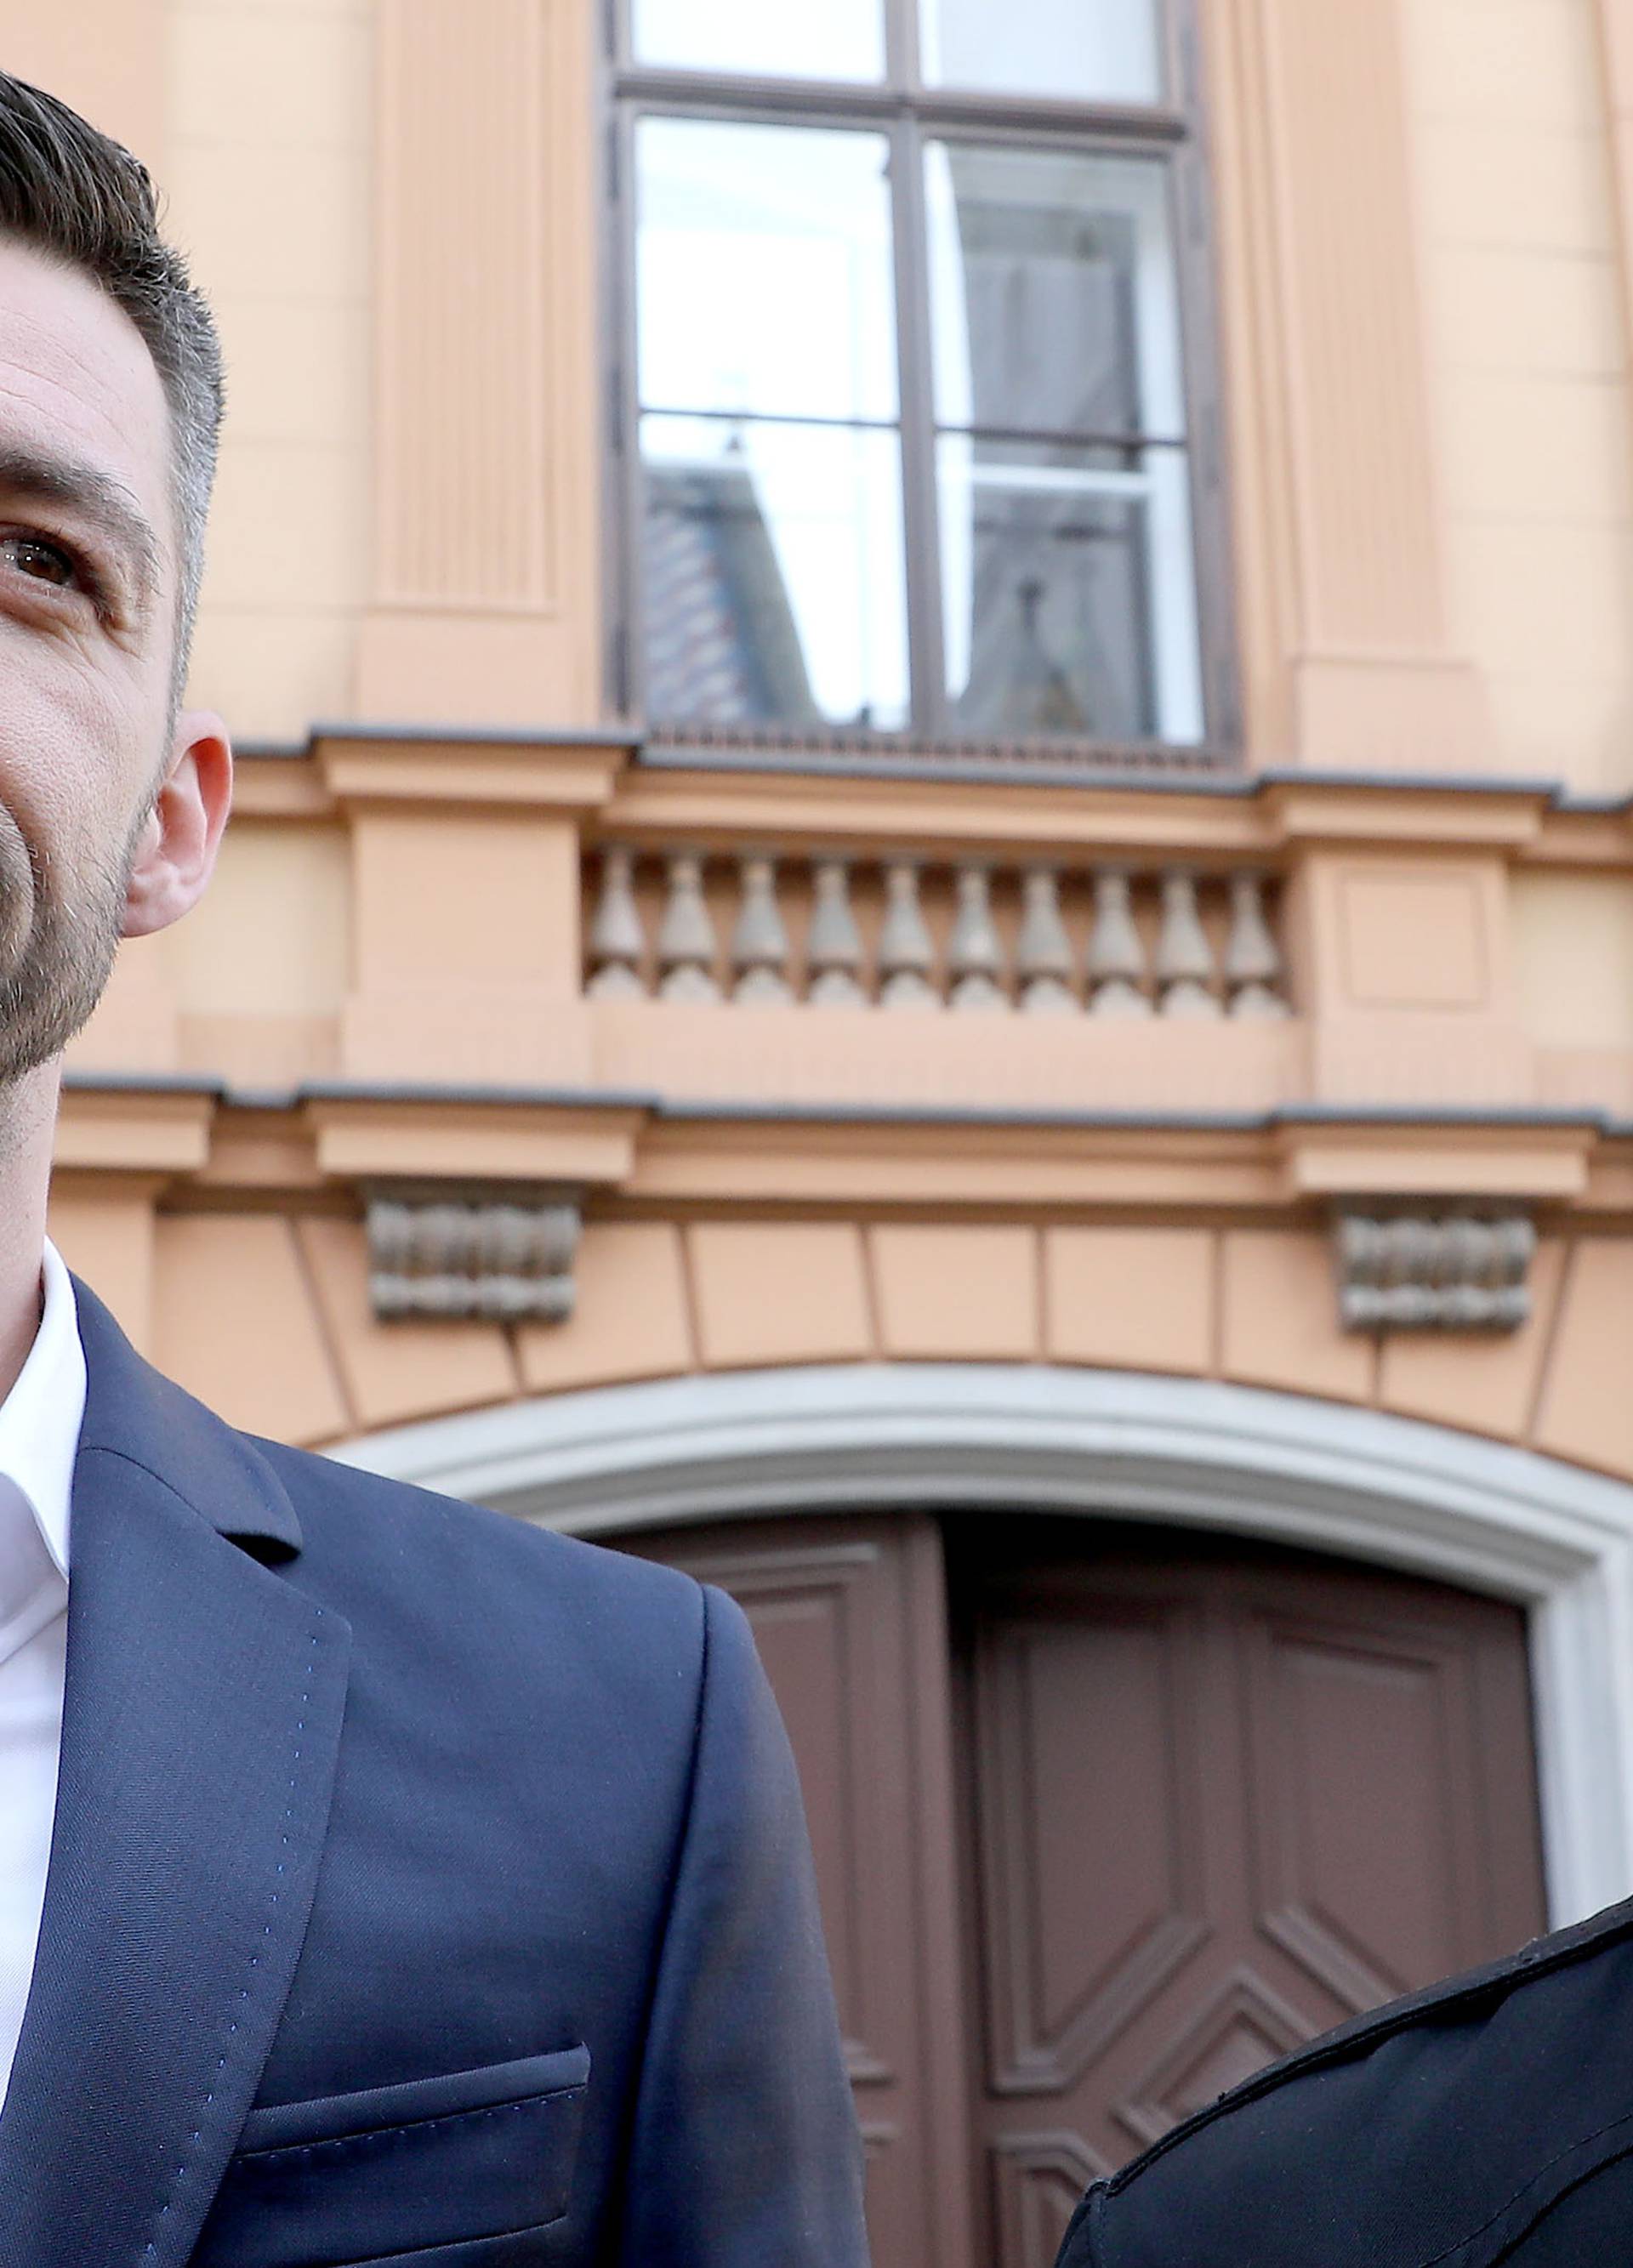 Film o borbi hrvatskog gay para: 'Samo želimo biti tate'